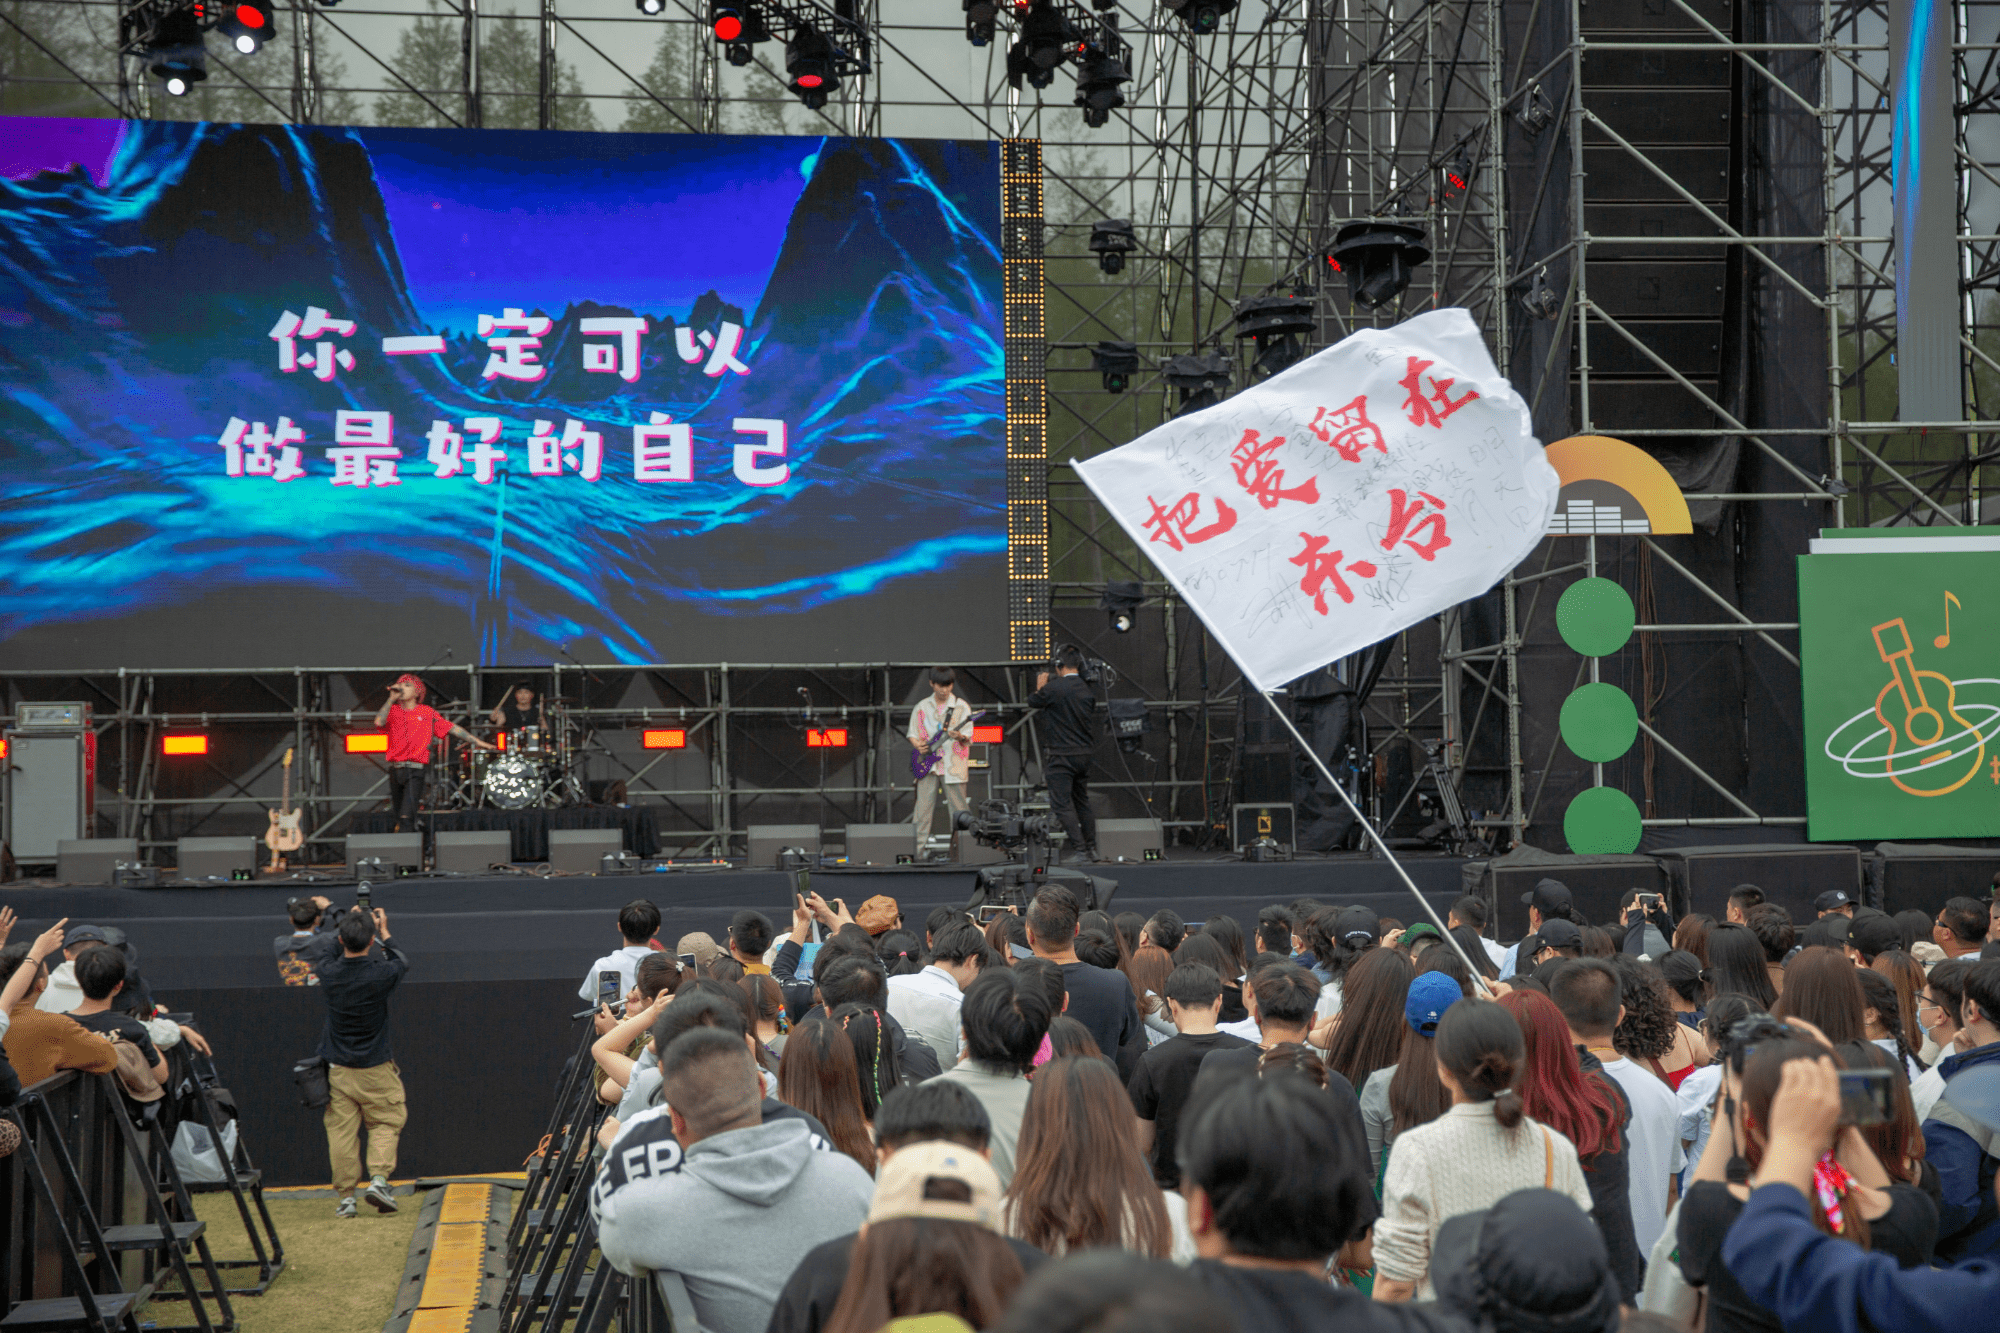 森林派对
:江苏东台黄海森林音乐节火热开场